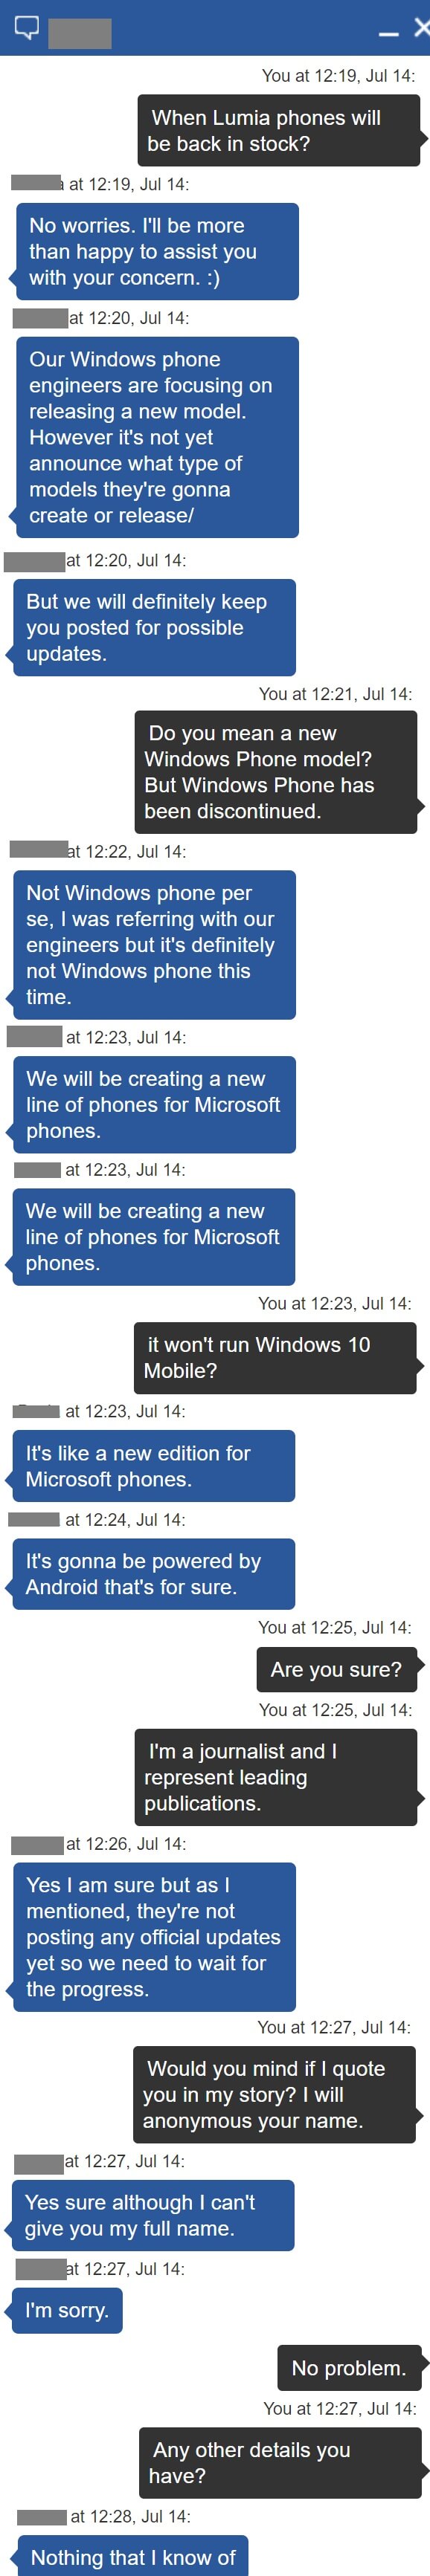 Microsoft phone leak